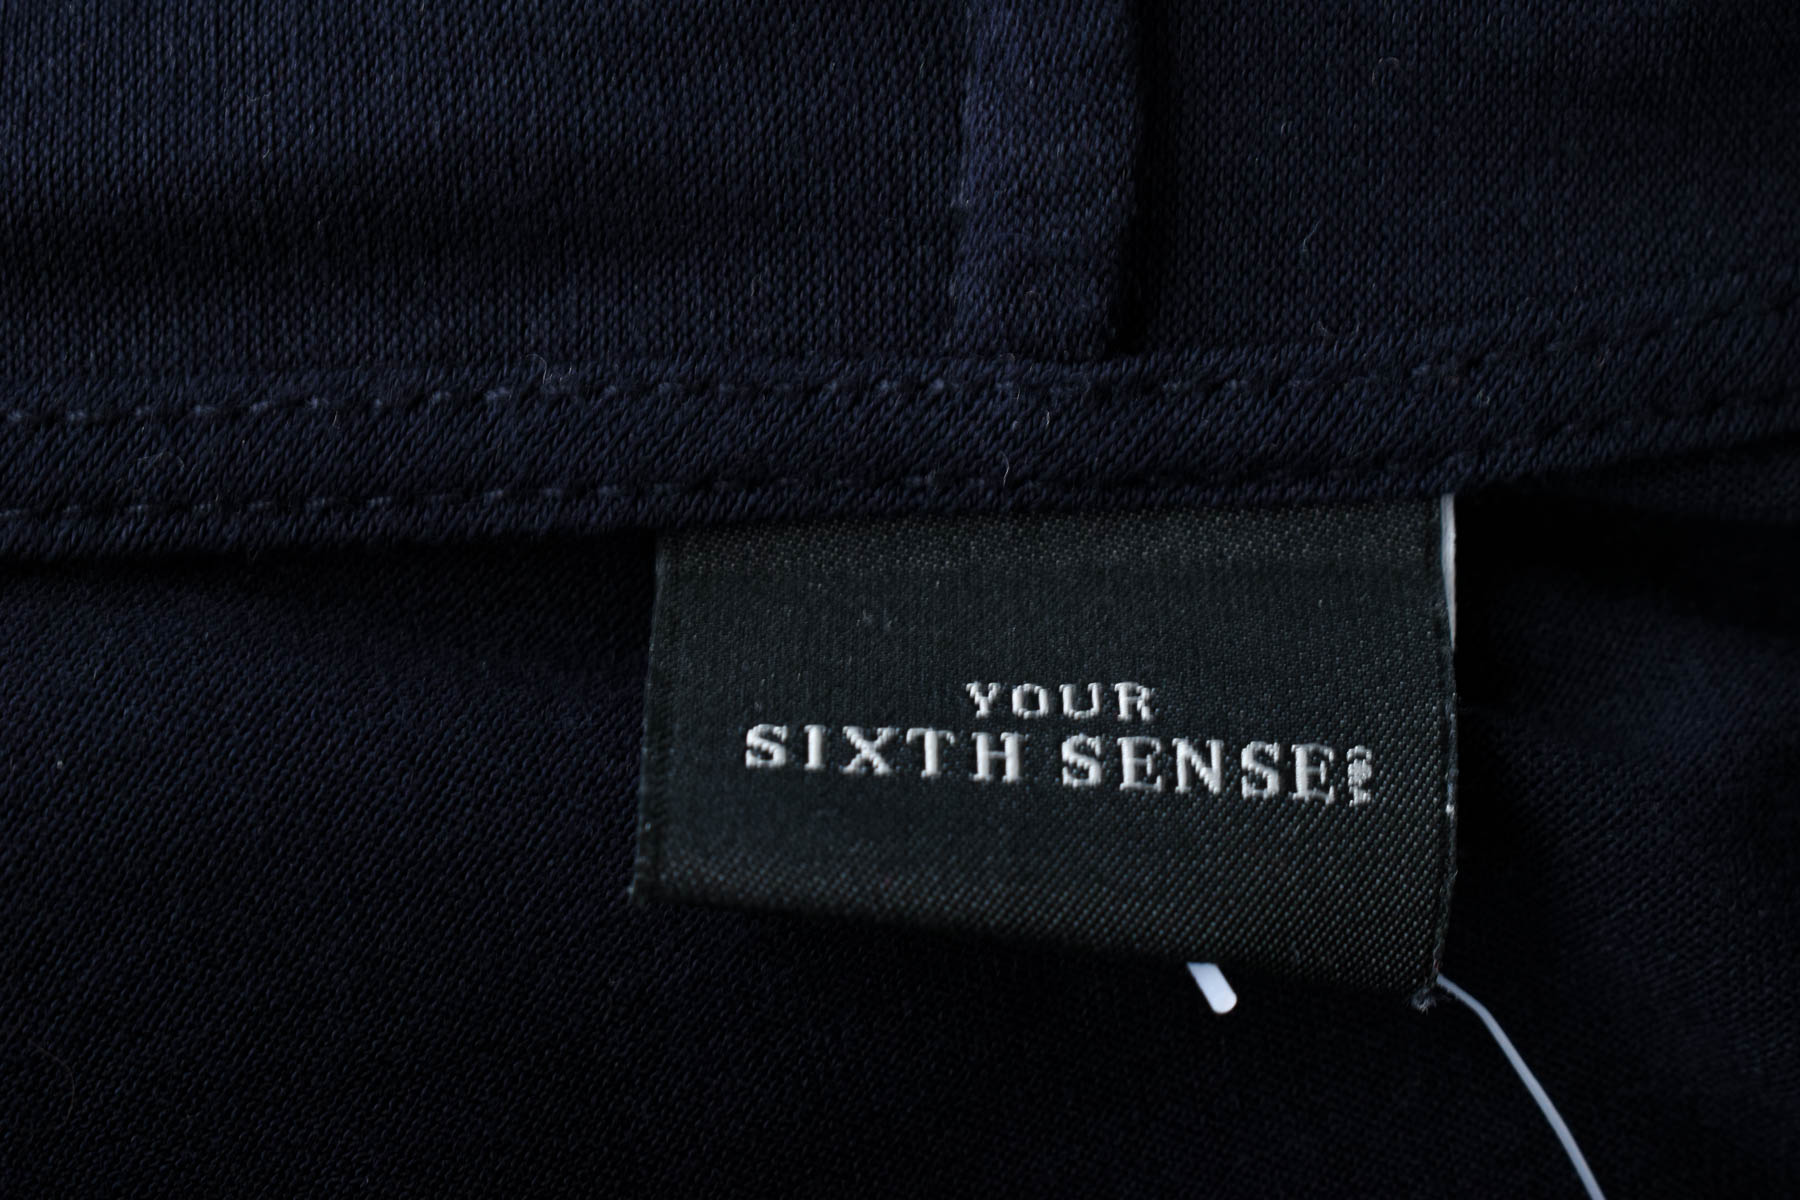 Γυναικεία ζακέτα - Sixth Sense - 2